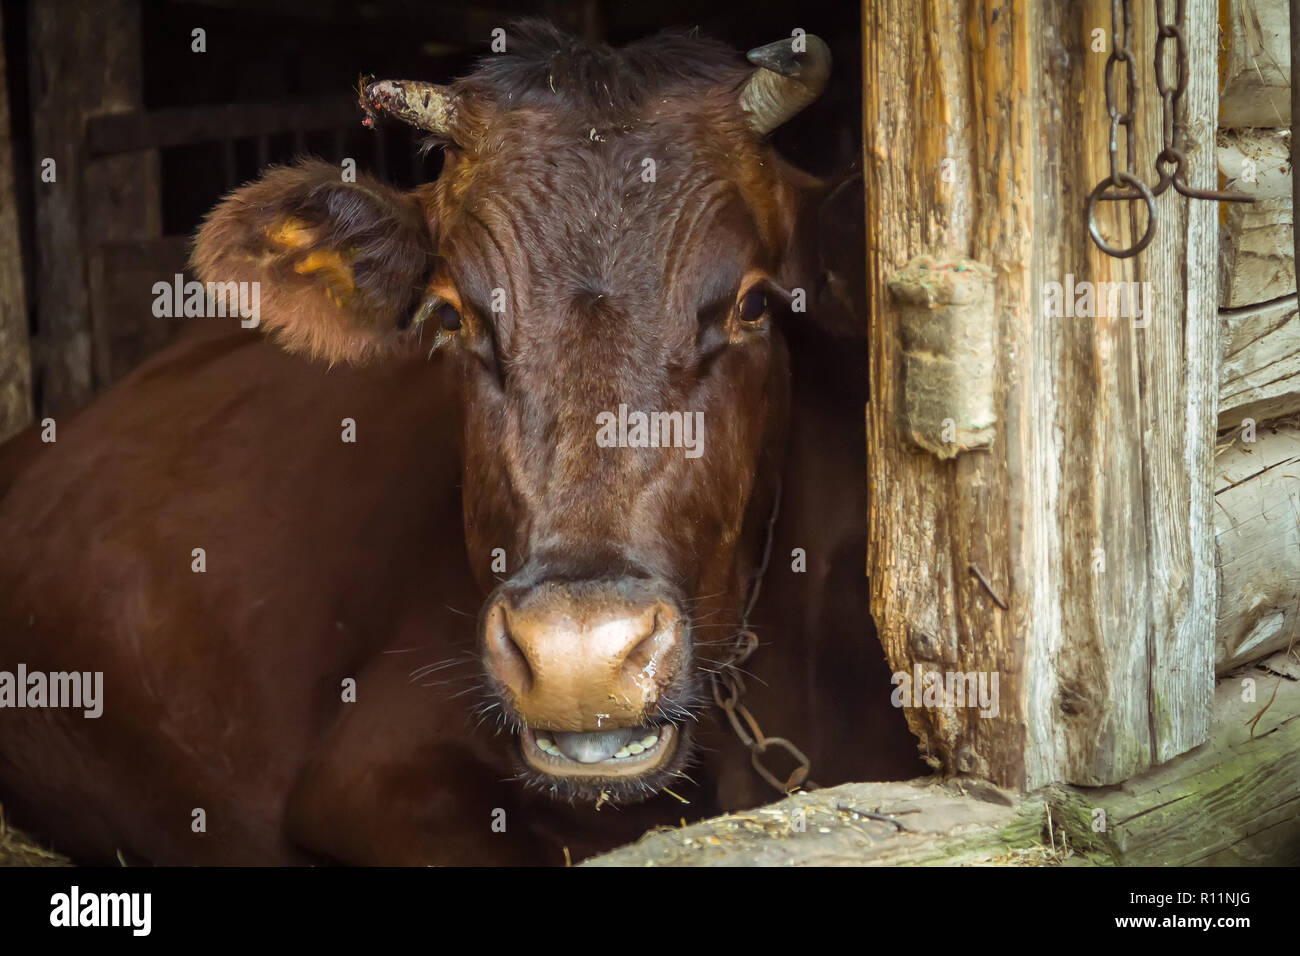 Una mucca marrone giace in una stalla nel villaggio, scena animale Foto Stock